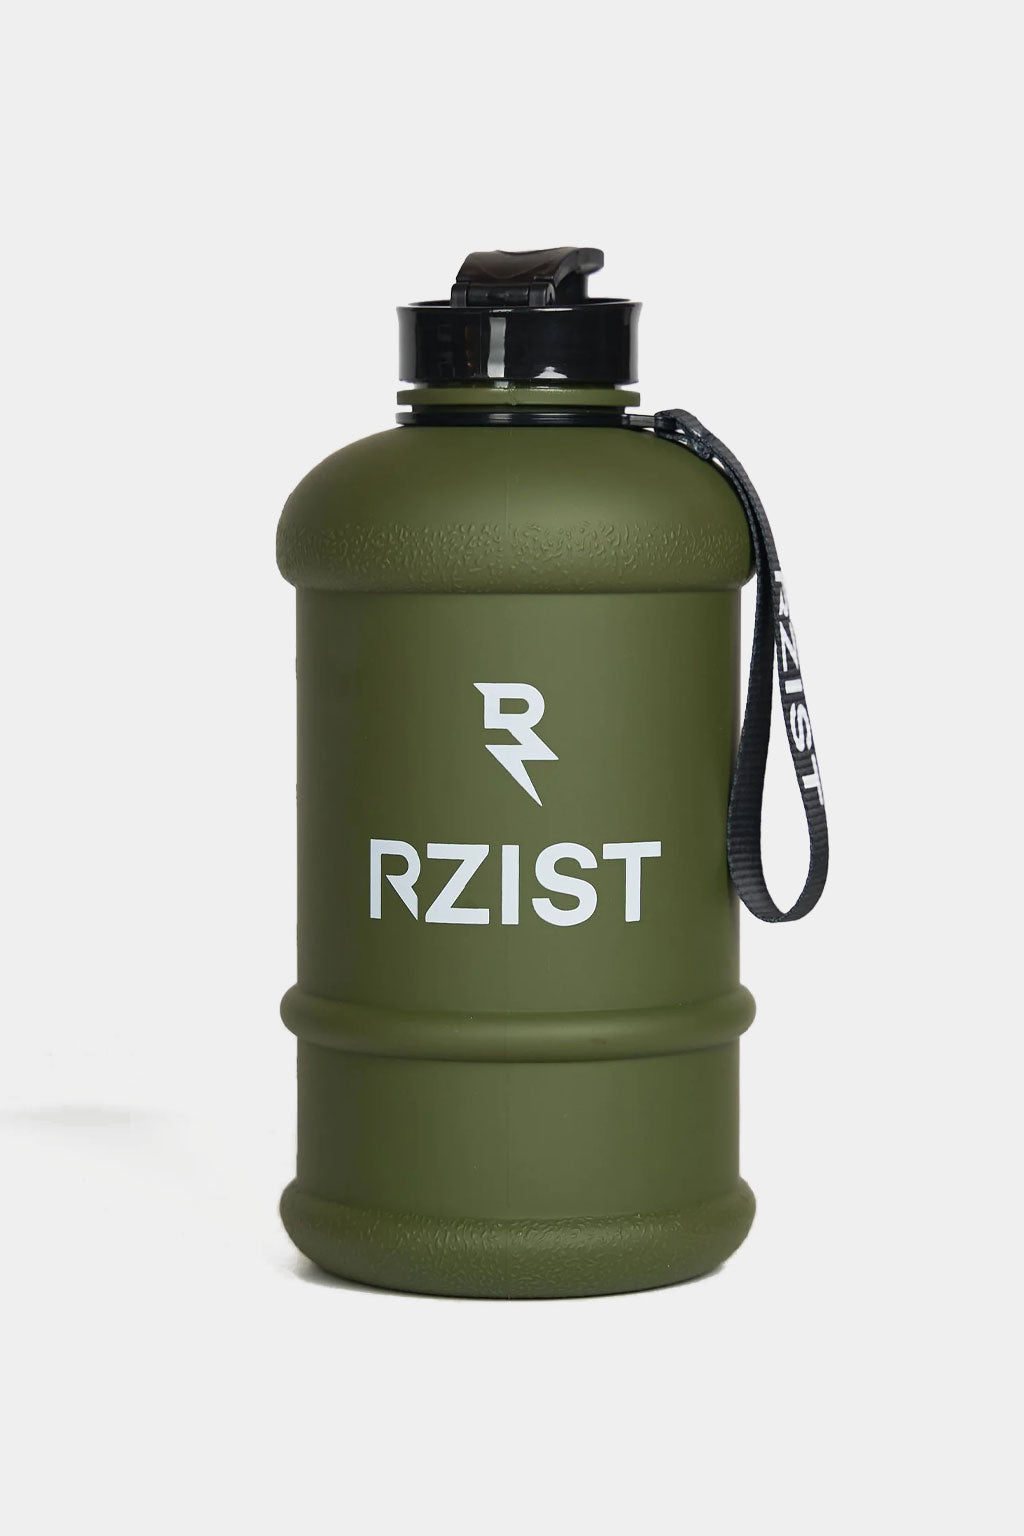 Rzist - Jet Black Water Bottle - 1.5l